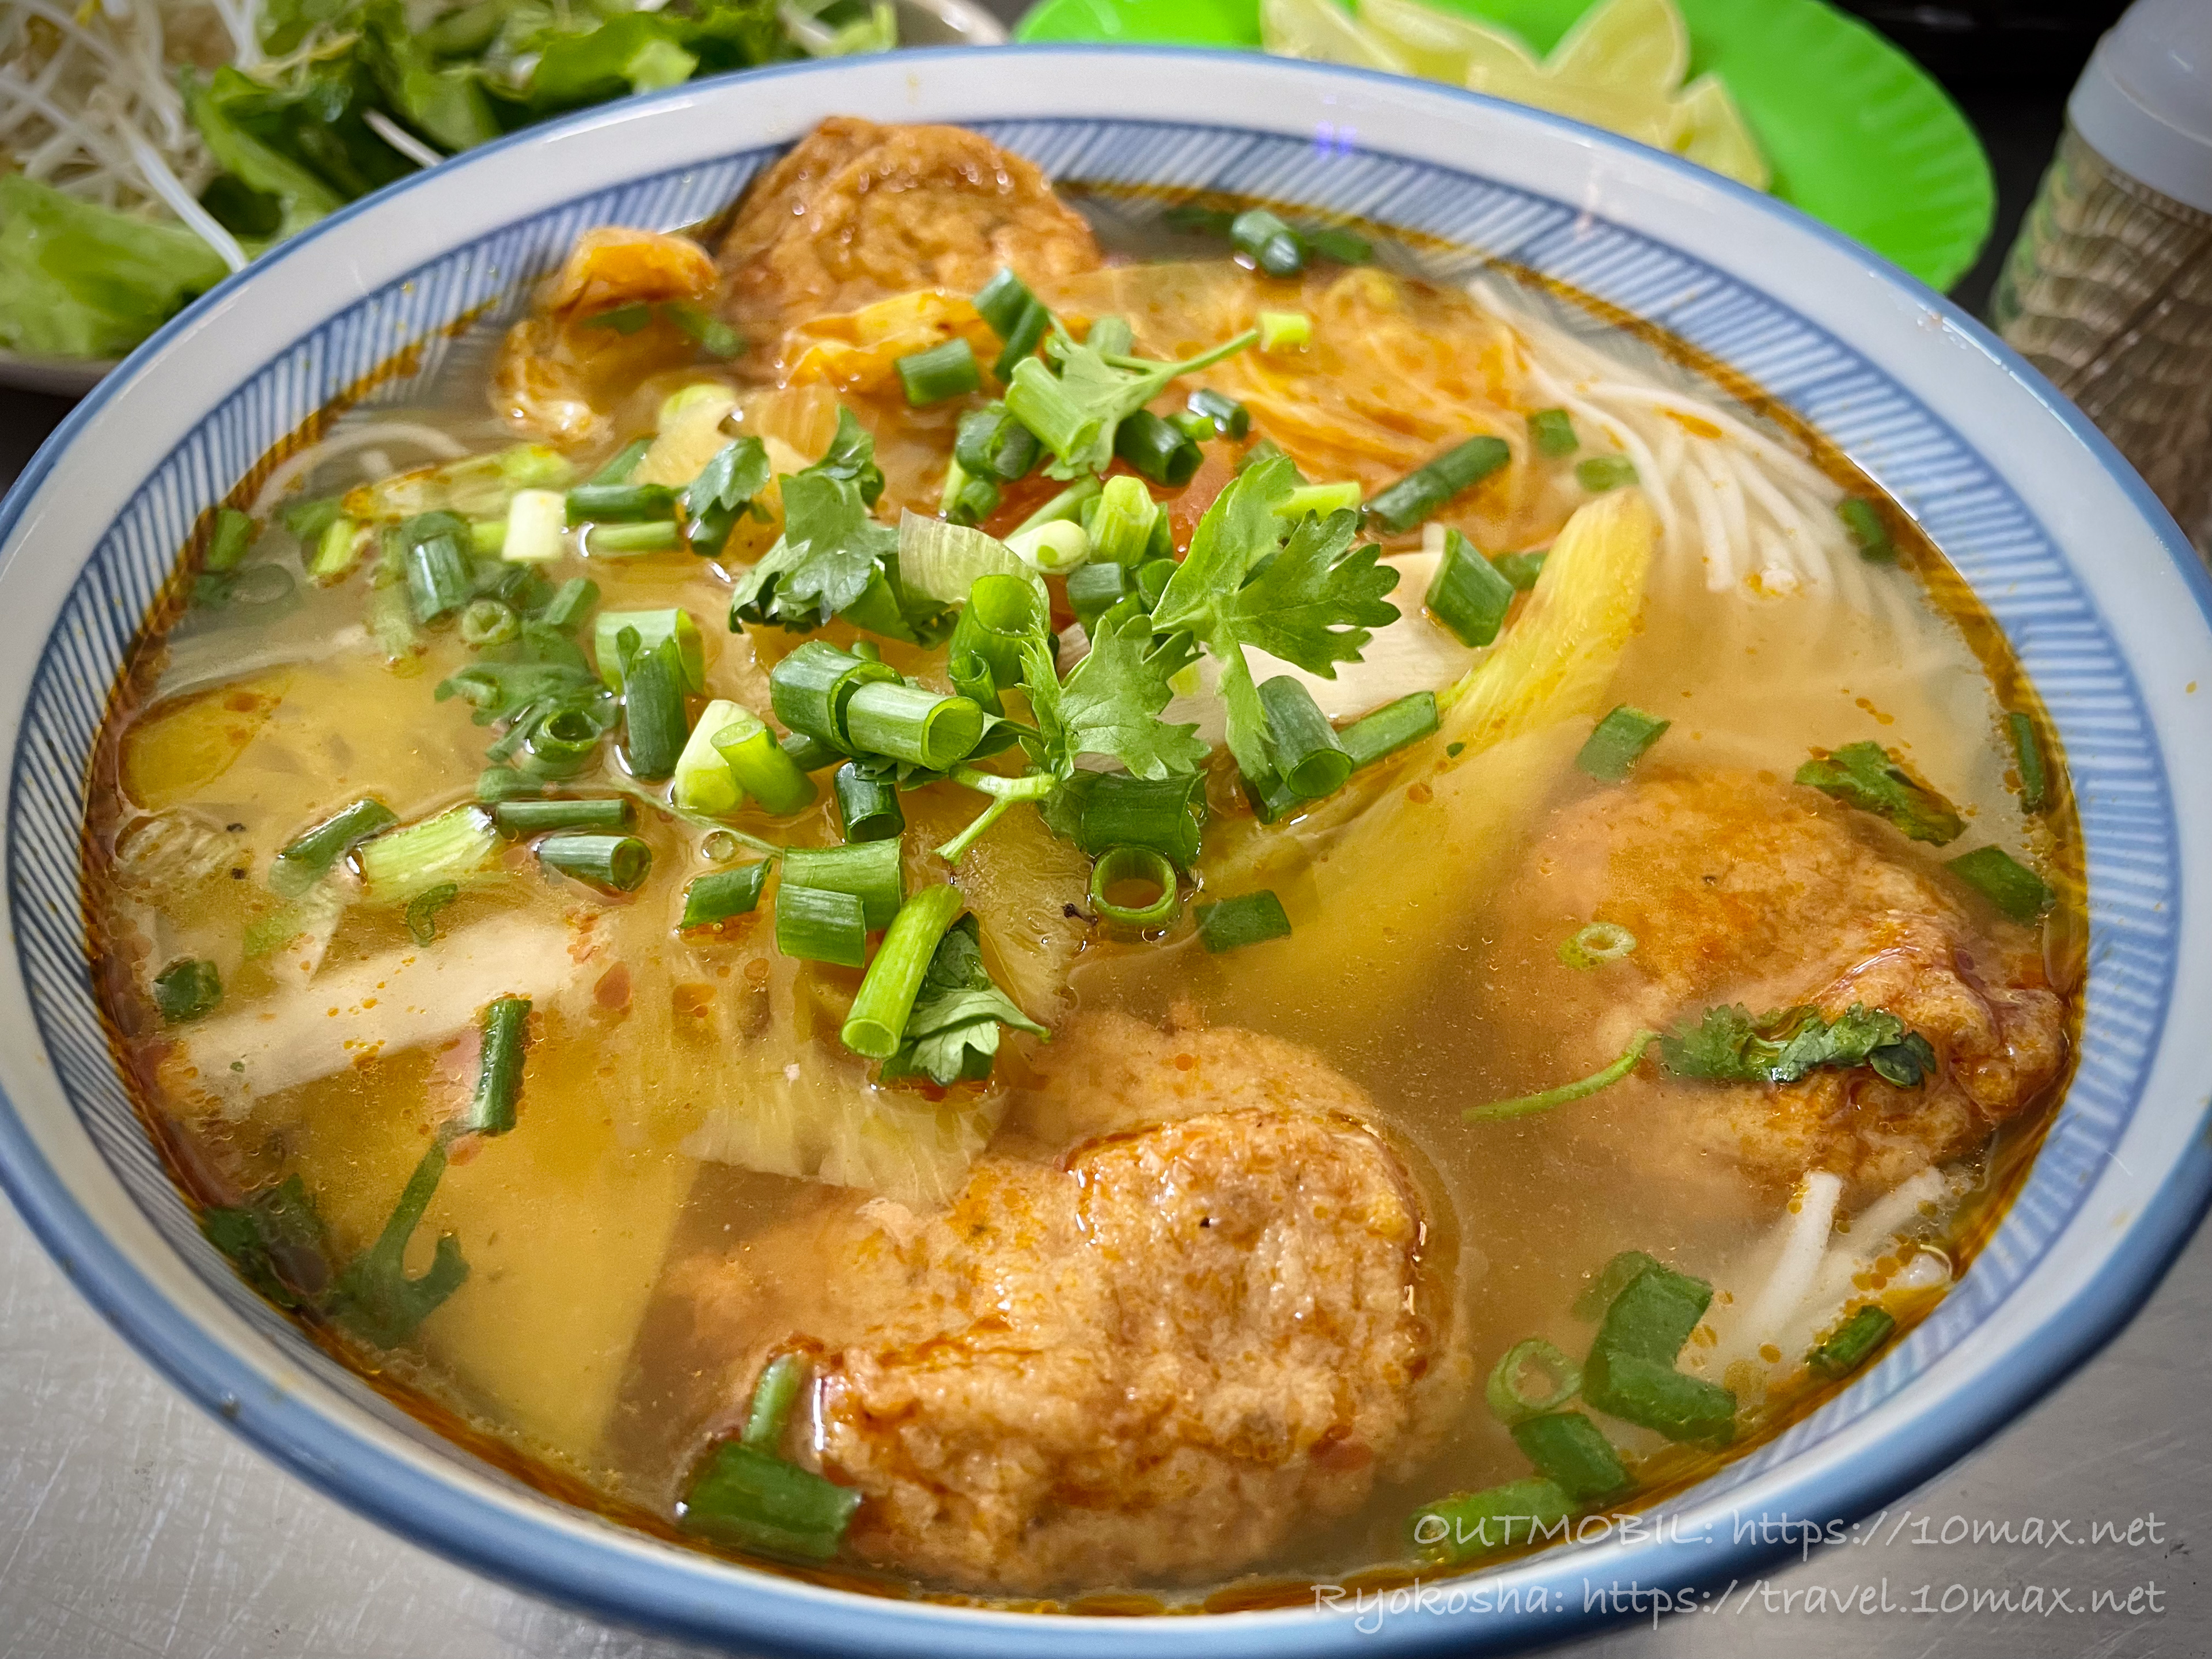 ブン・チャー・カー・クア (Bun cha ca cua / Fish ball noodle with crab paste), Bún chả cá 109 Nguyễn Chí Thanh, ダナン名物, グルメ, 麺